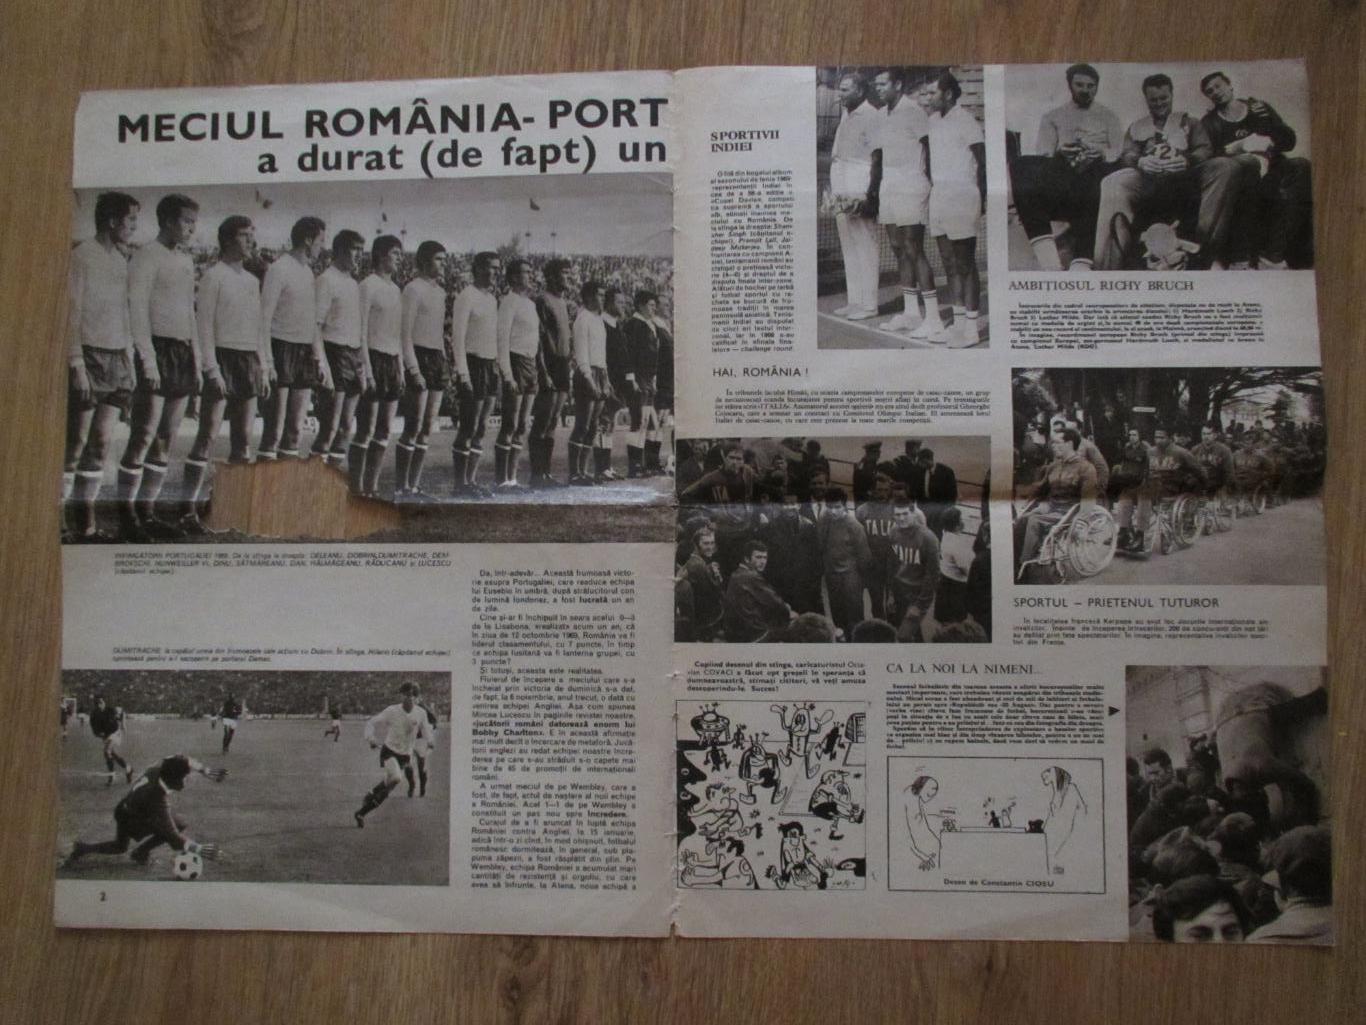 Румыния-Португалия 1969,обложка из румынского журнала SPORT 2